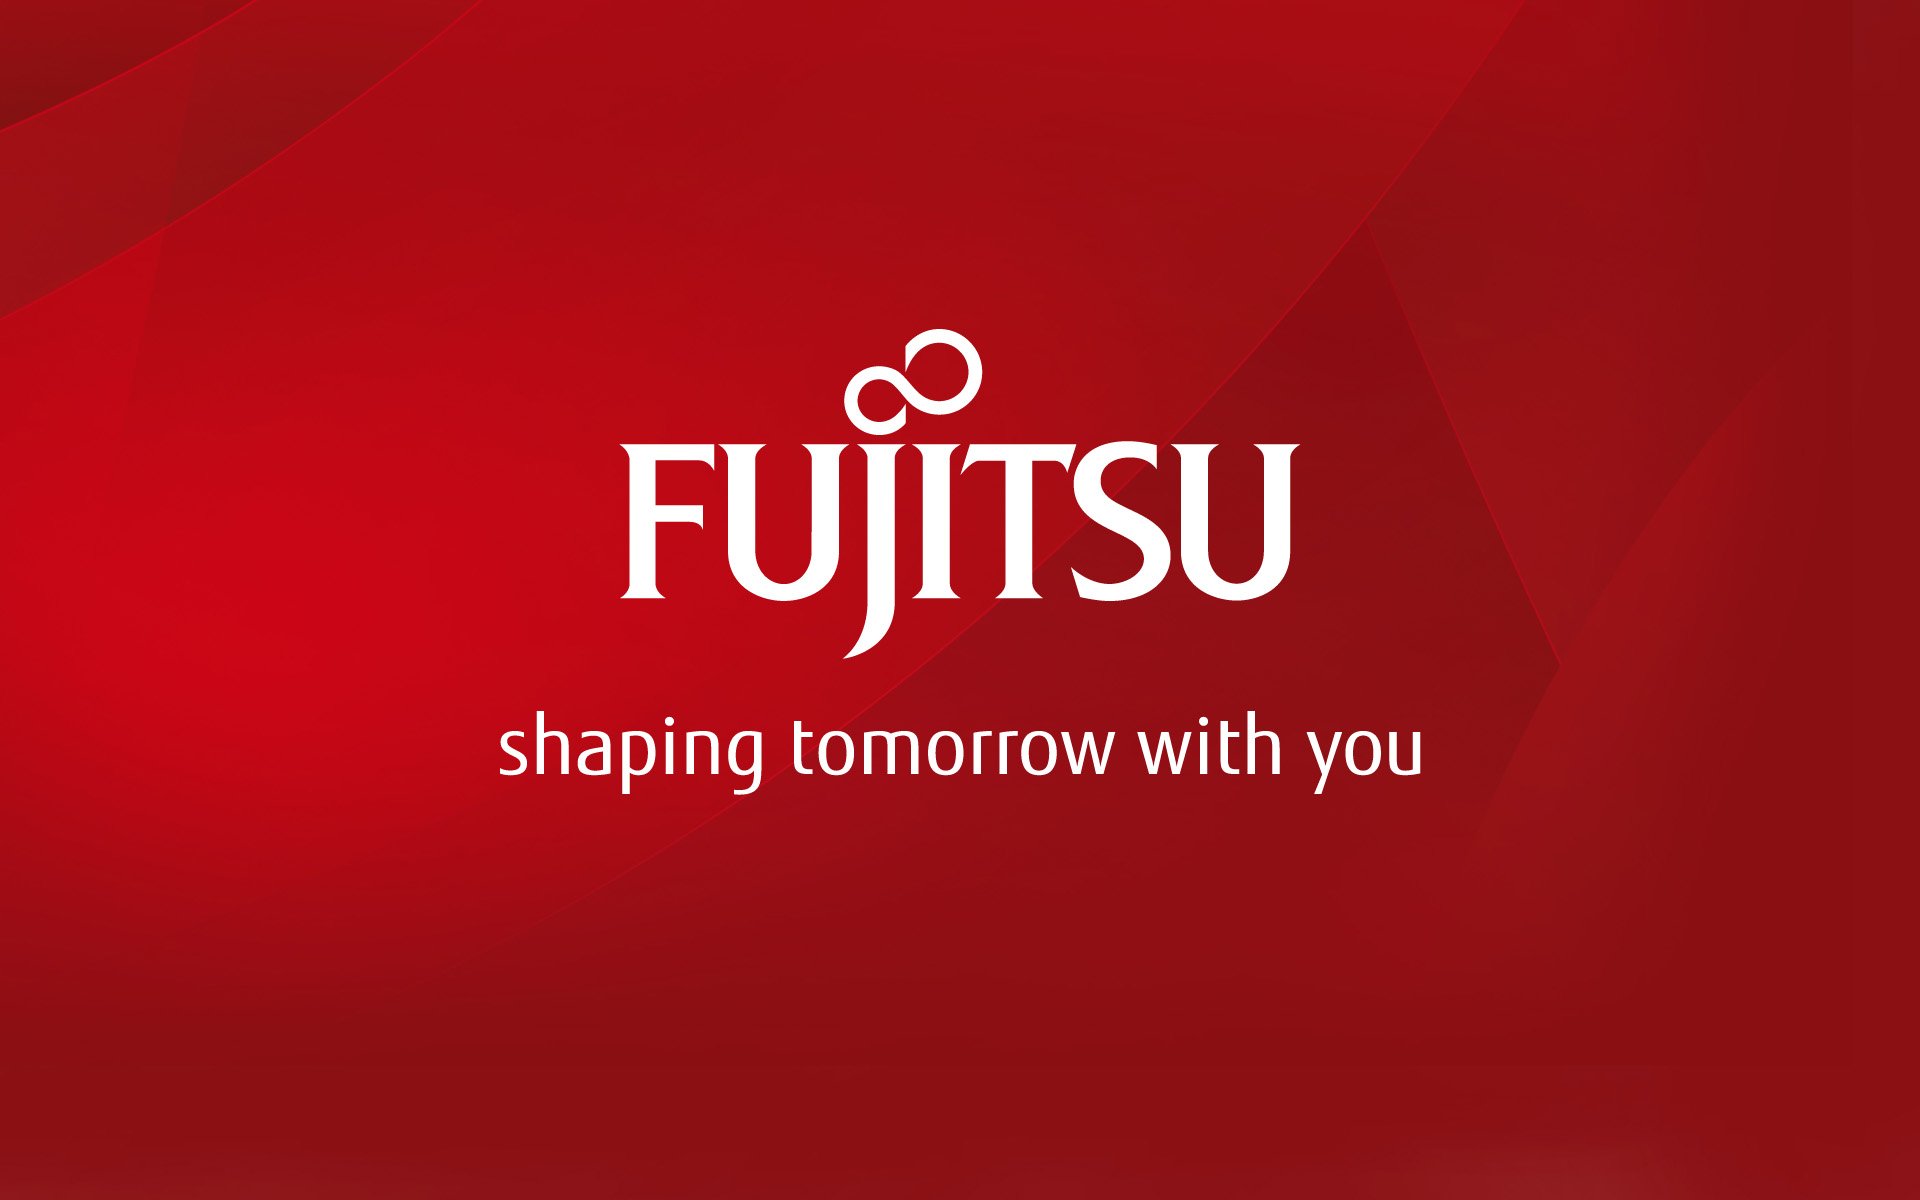 fujitsu, Computer Wallpaper